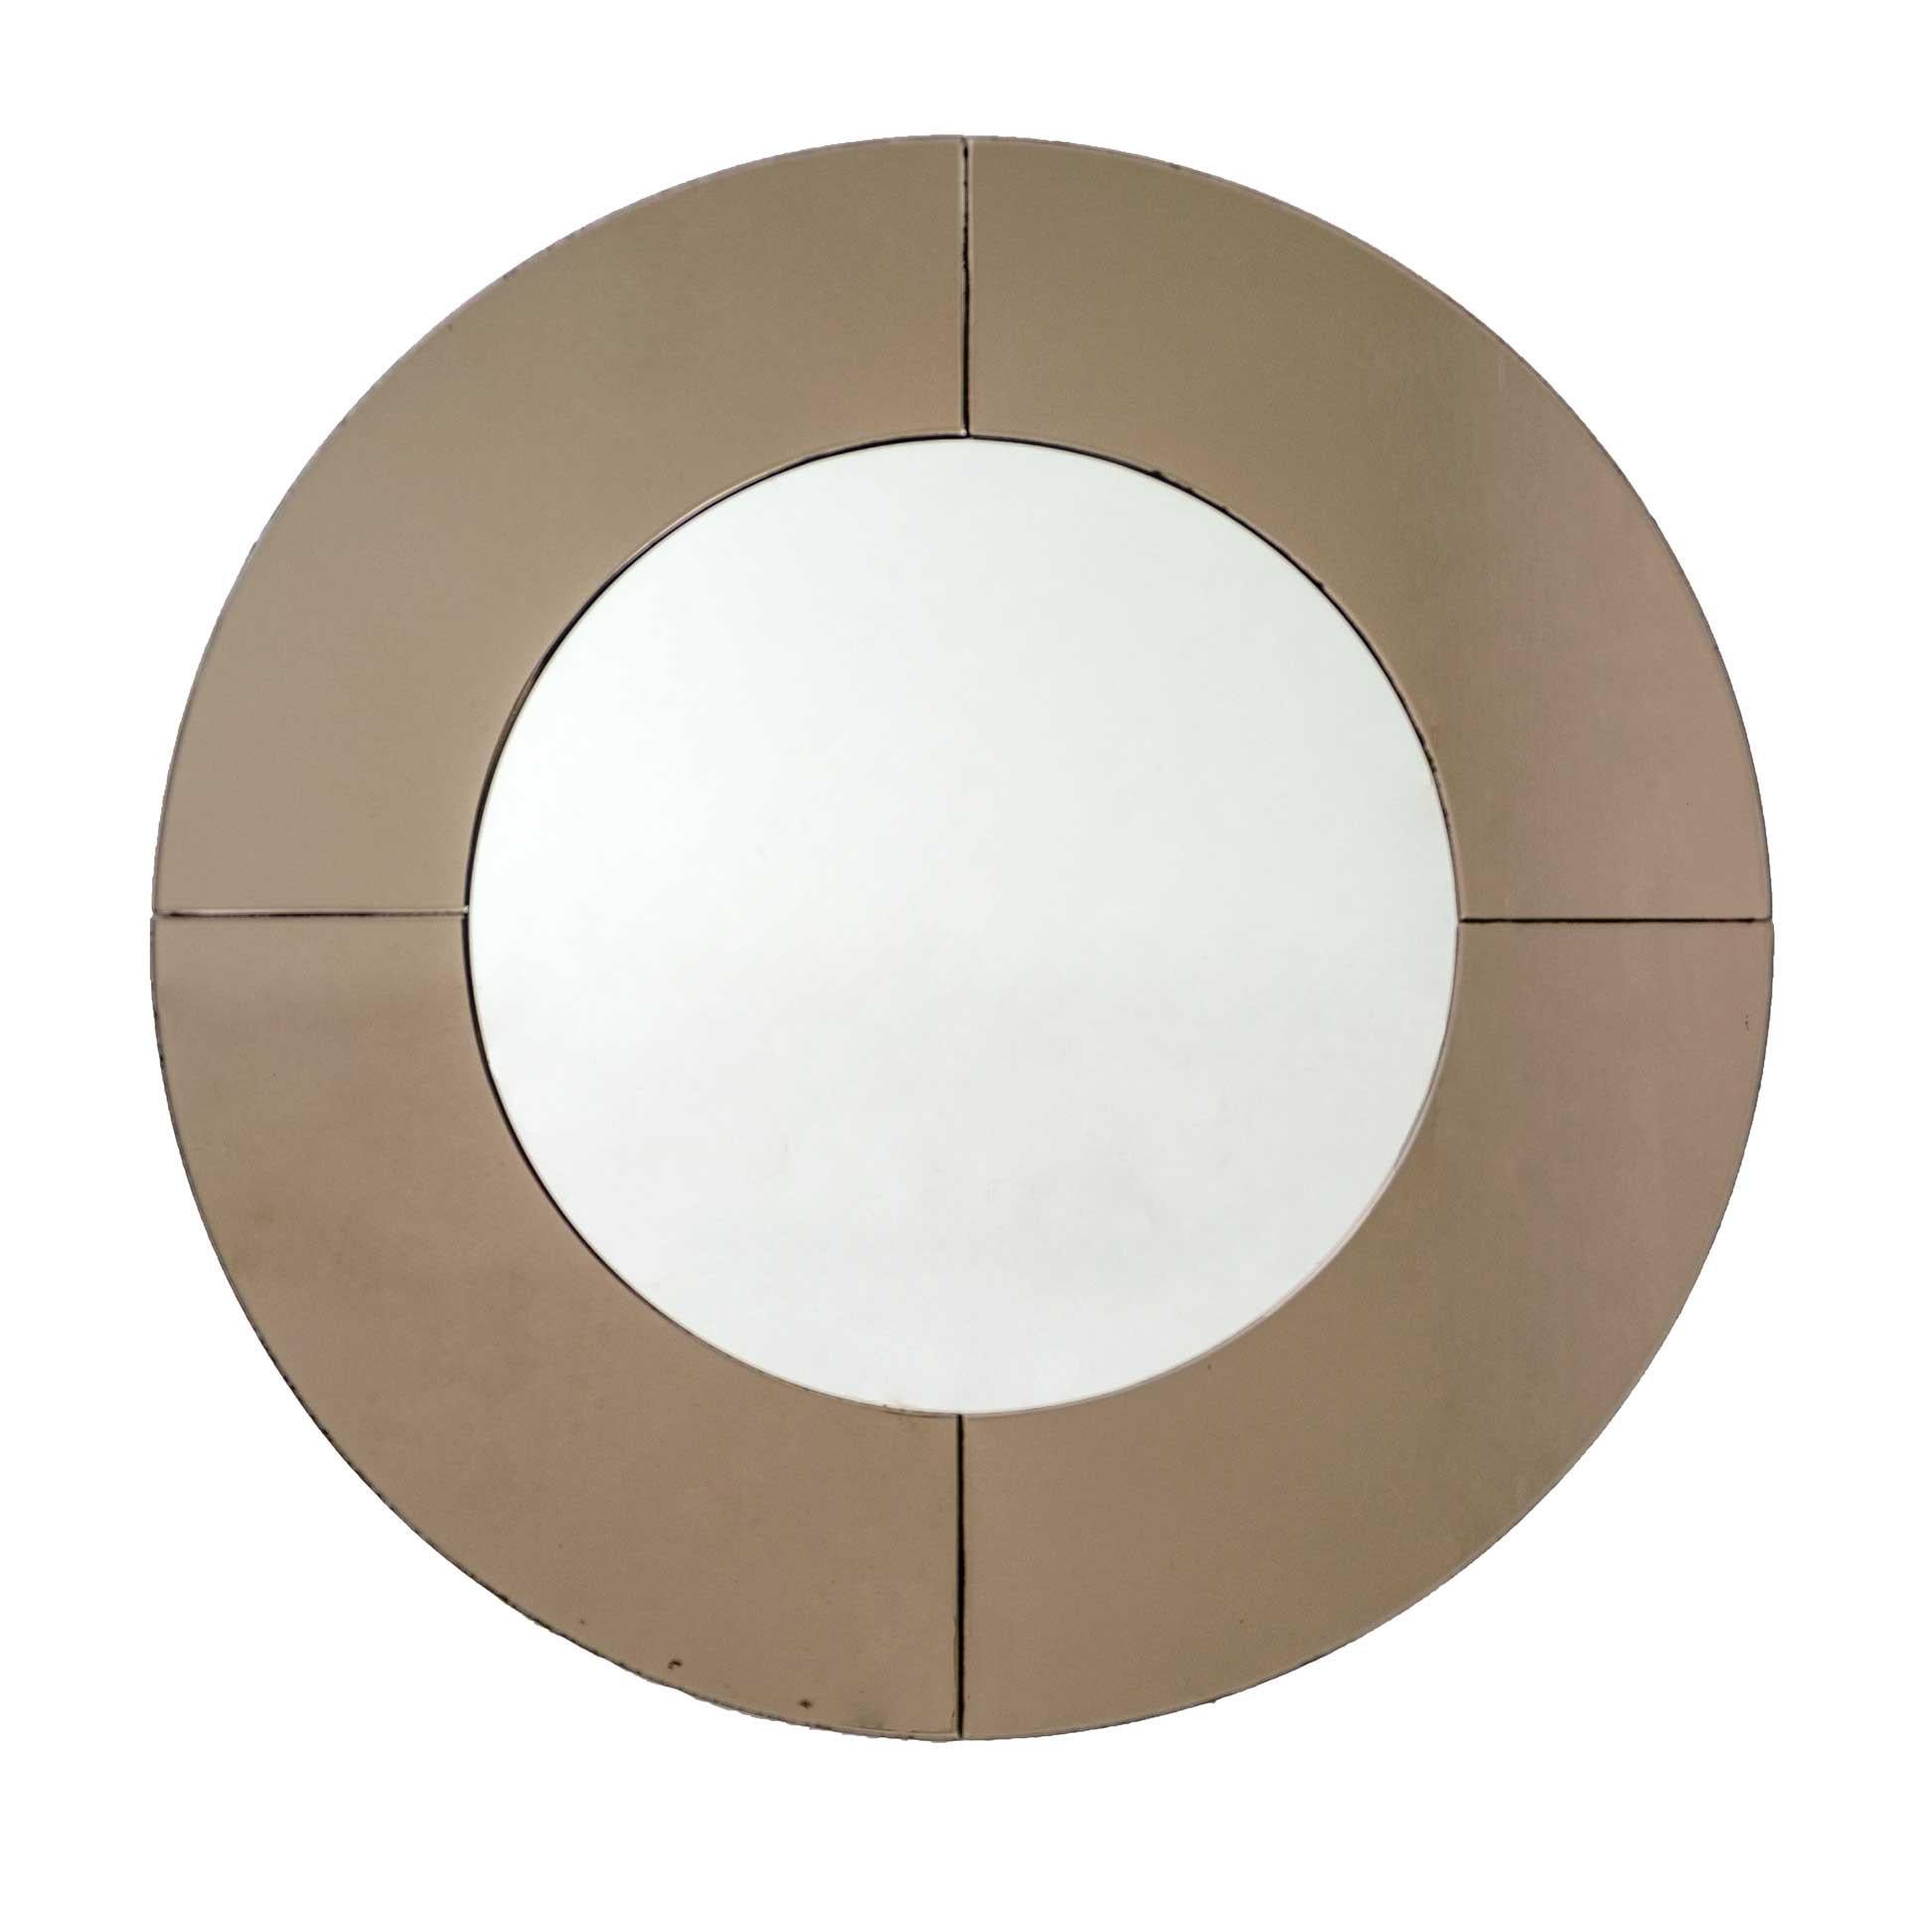 Imposanter und eleganter runder Wandspiegel aus verspiegeltem Glas in rauchiger Bronzefarbe. Der Spiegel passt sich jeder Art von Umgebung an, von Vintage bis modern. Hergestellt in Italien in den 1970er Jahren.
Alters- und gebrauchsbedingte